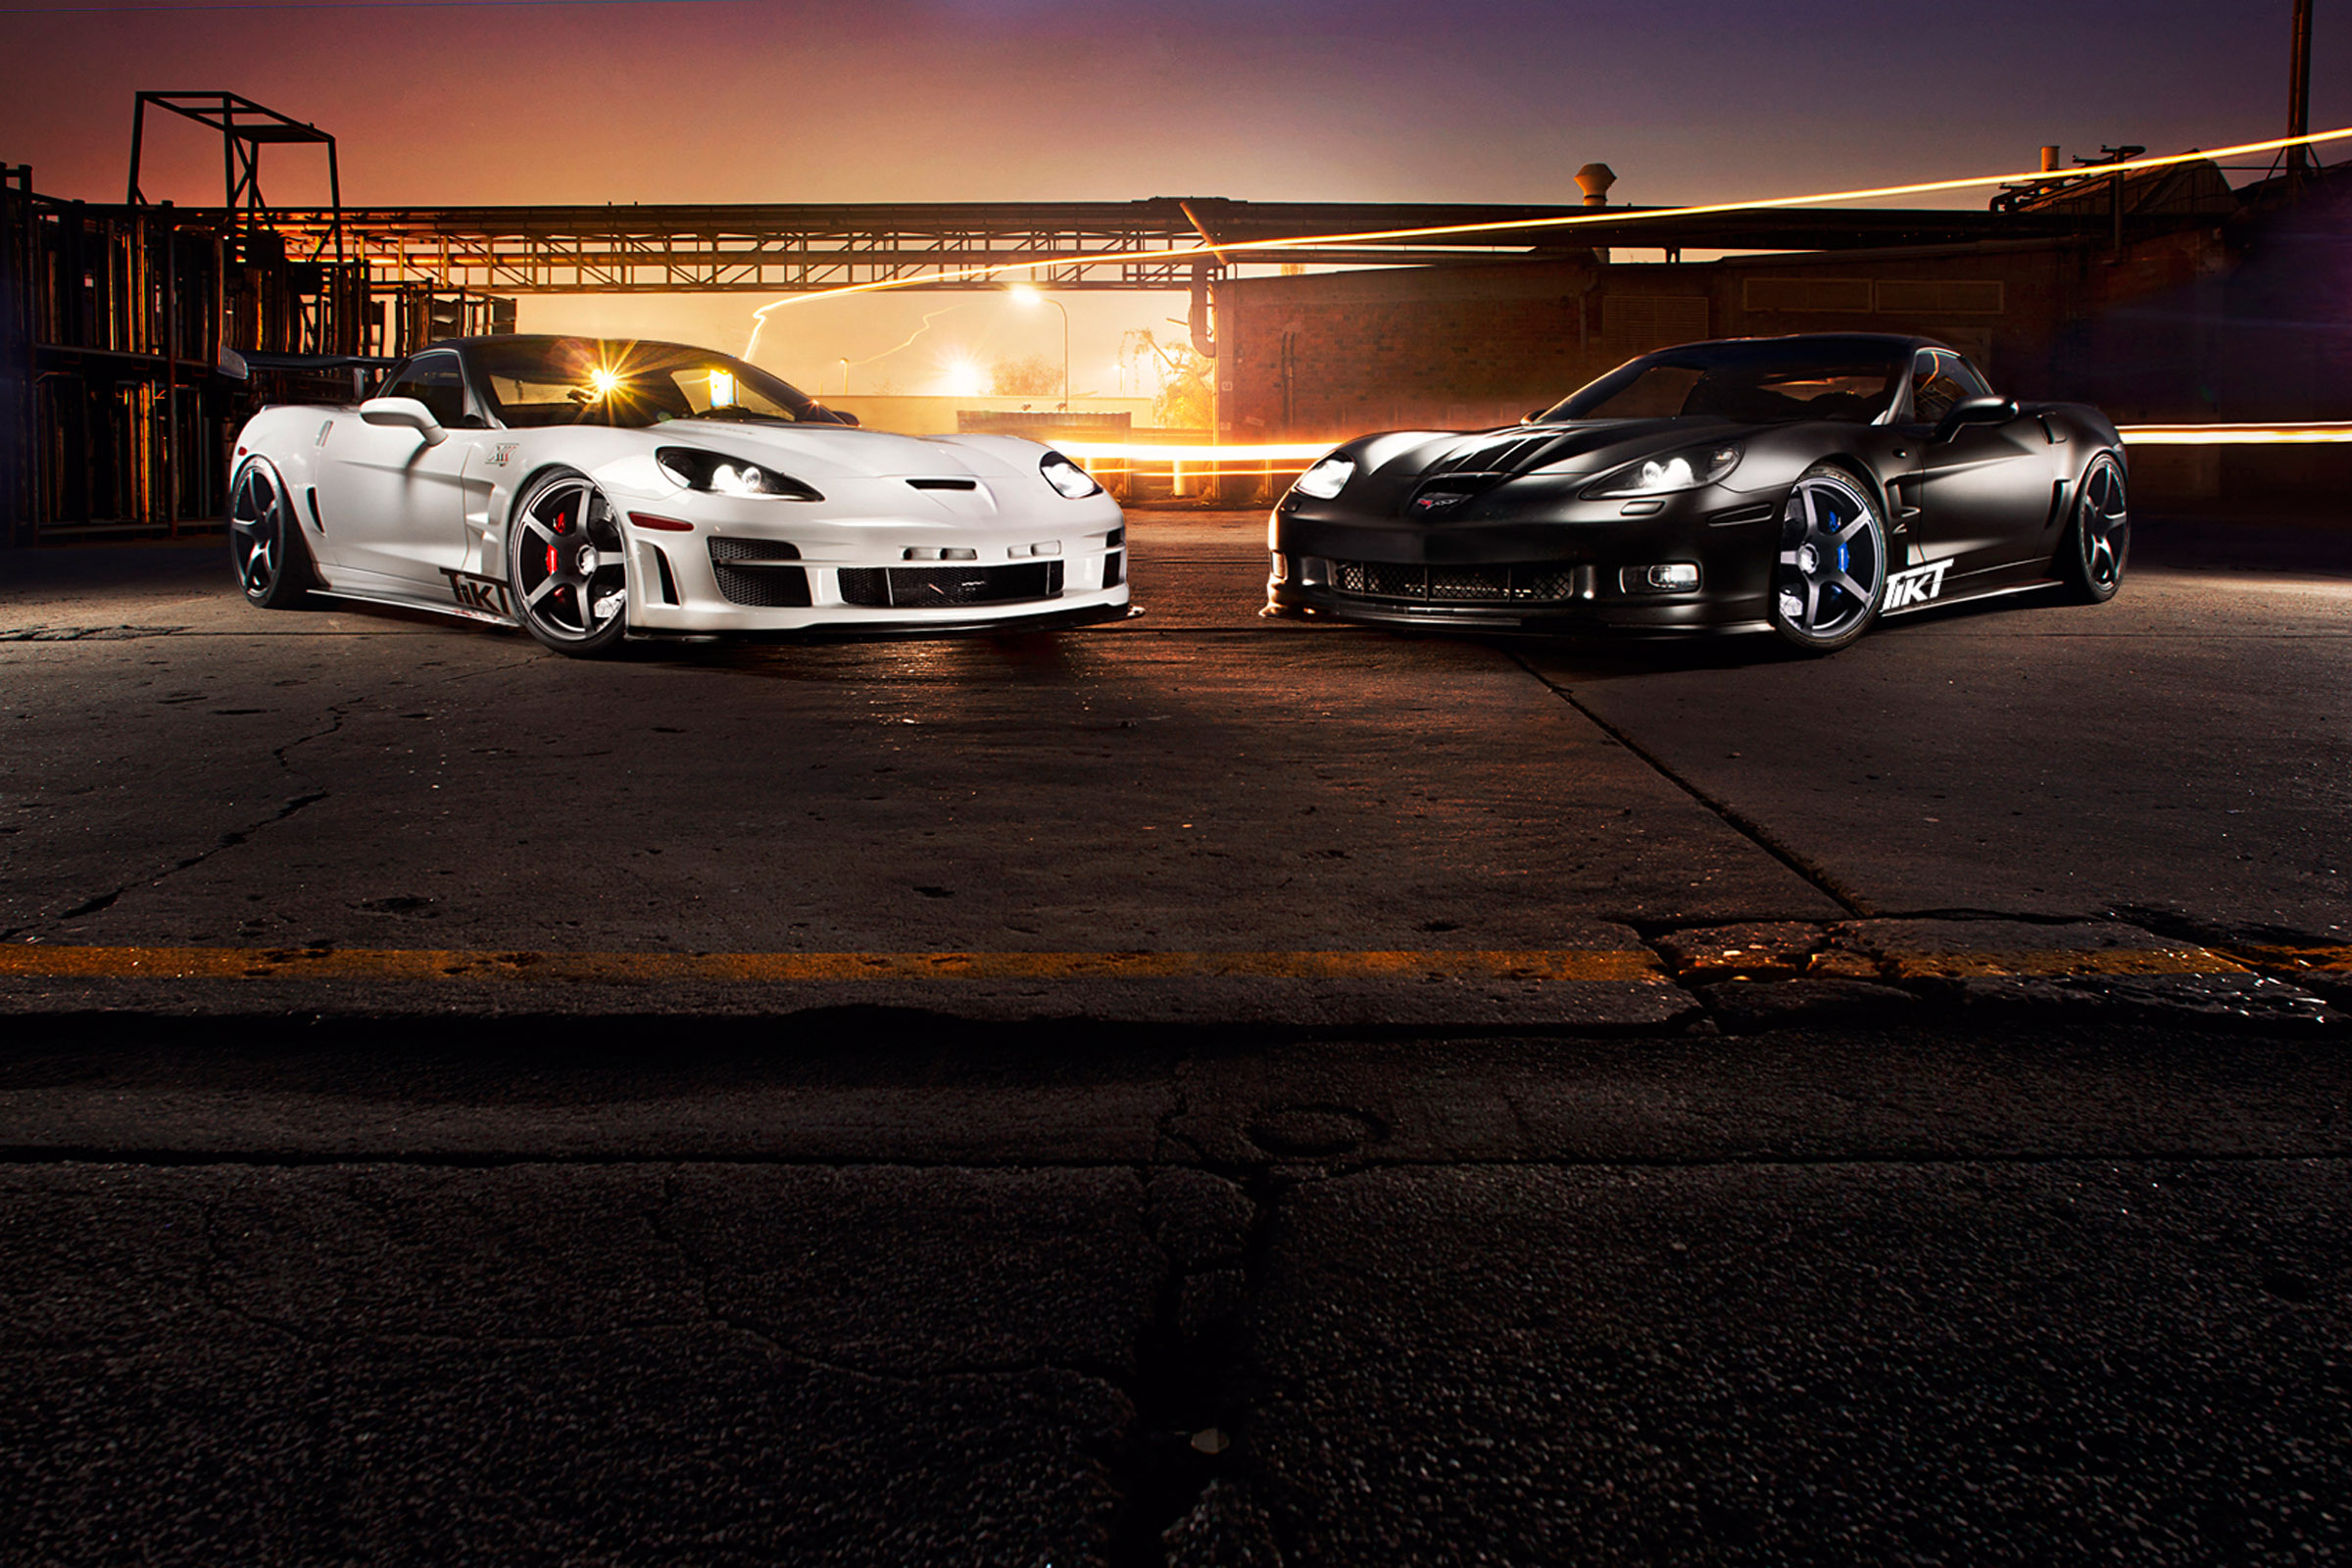 2012, Tikt, Corvette, C 6, Zr1, Supercar, Supercars Wallpaper